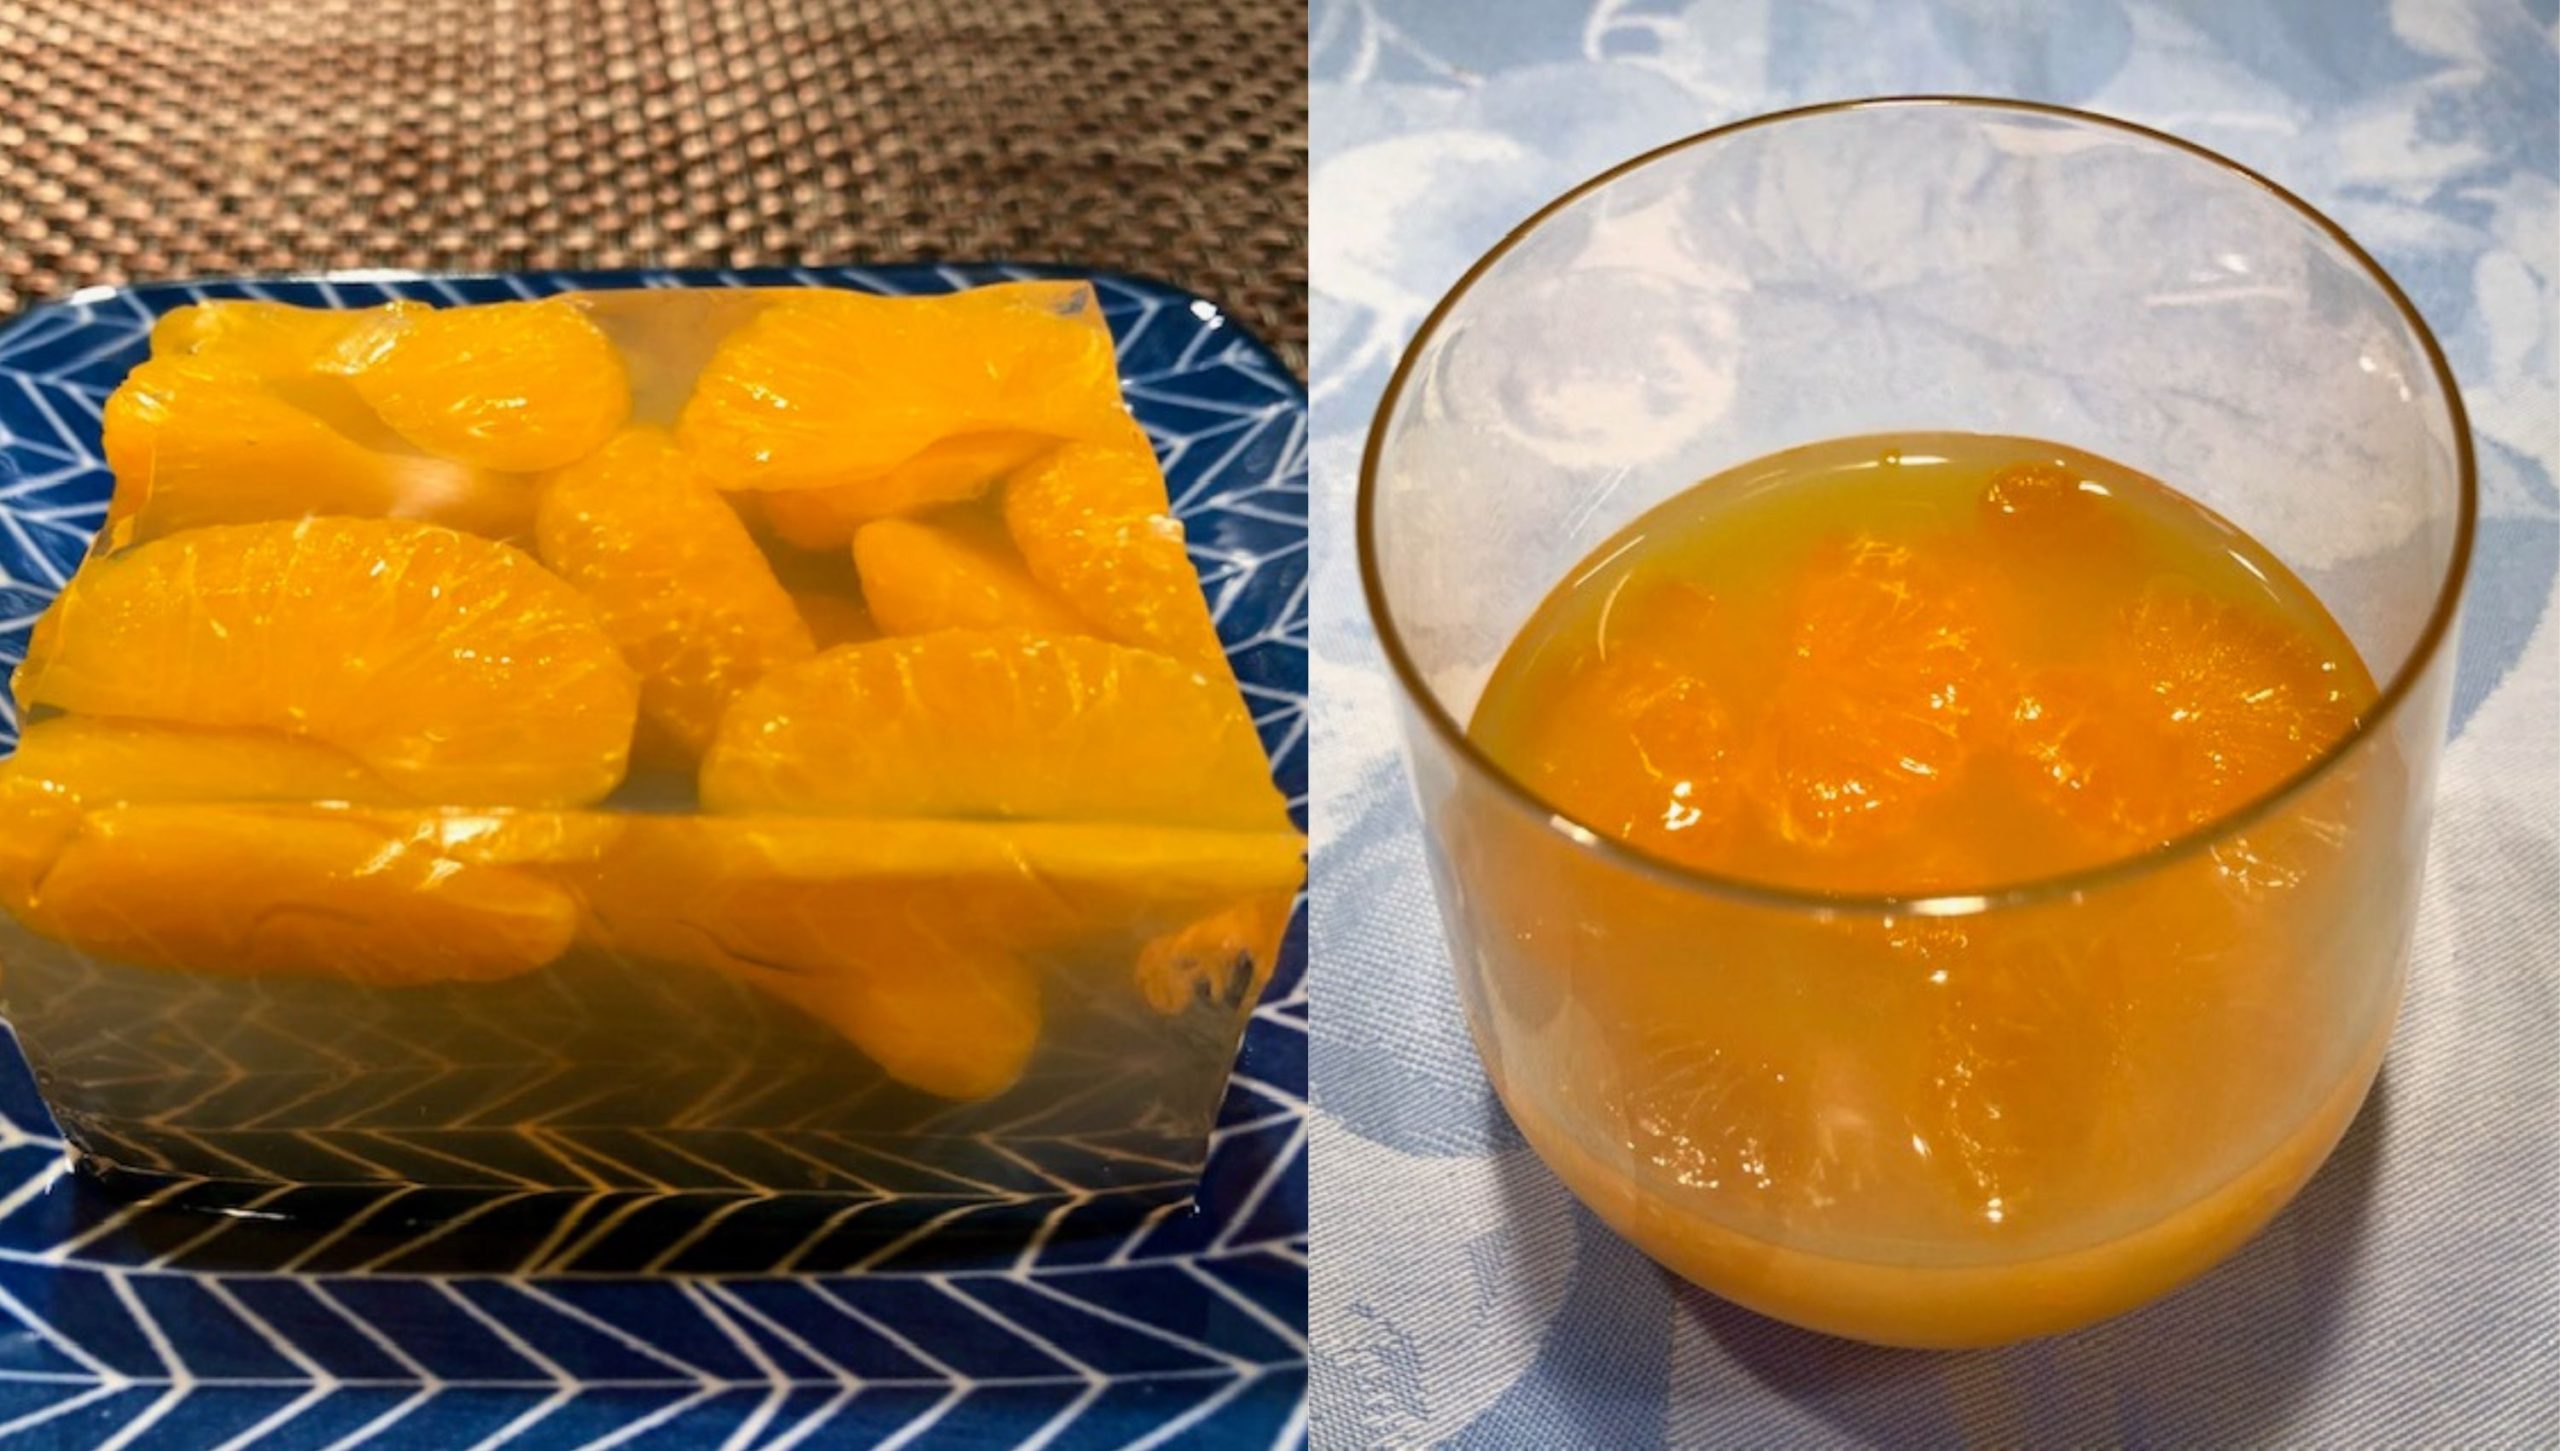 Mandarin orange dessert with 4 ingredients